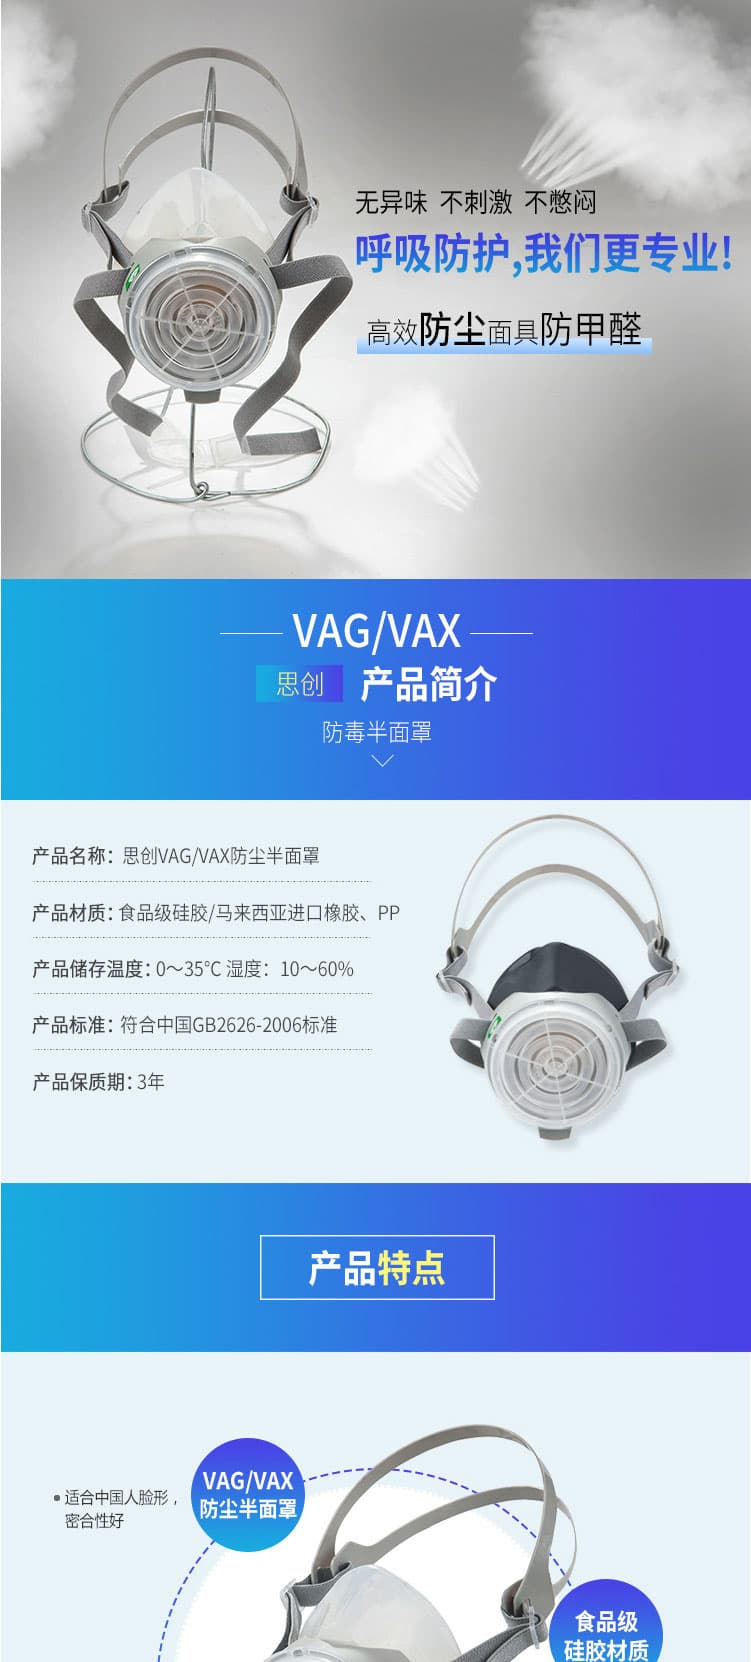 思创 ST-VAX 头戴式橡胶多功能防尘面罩